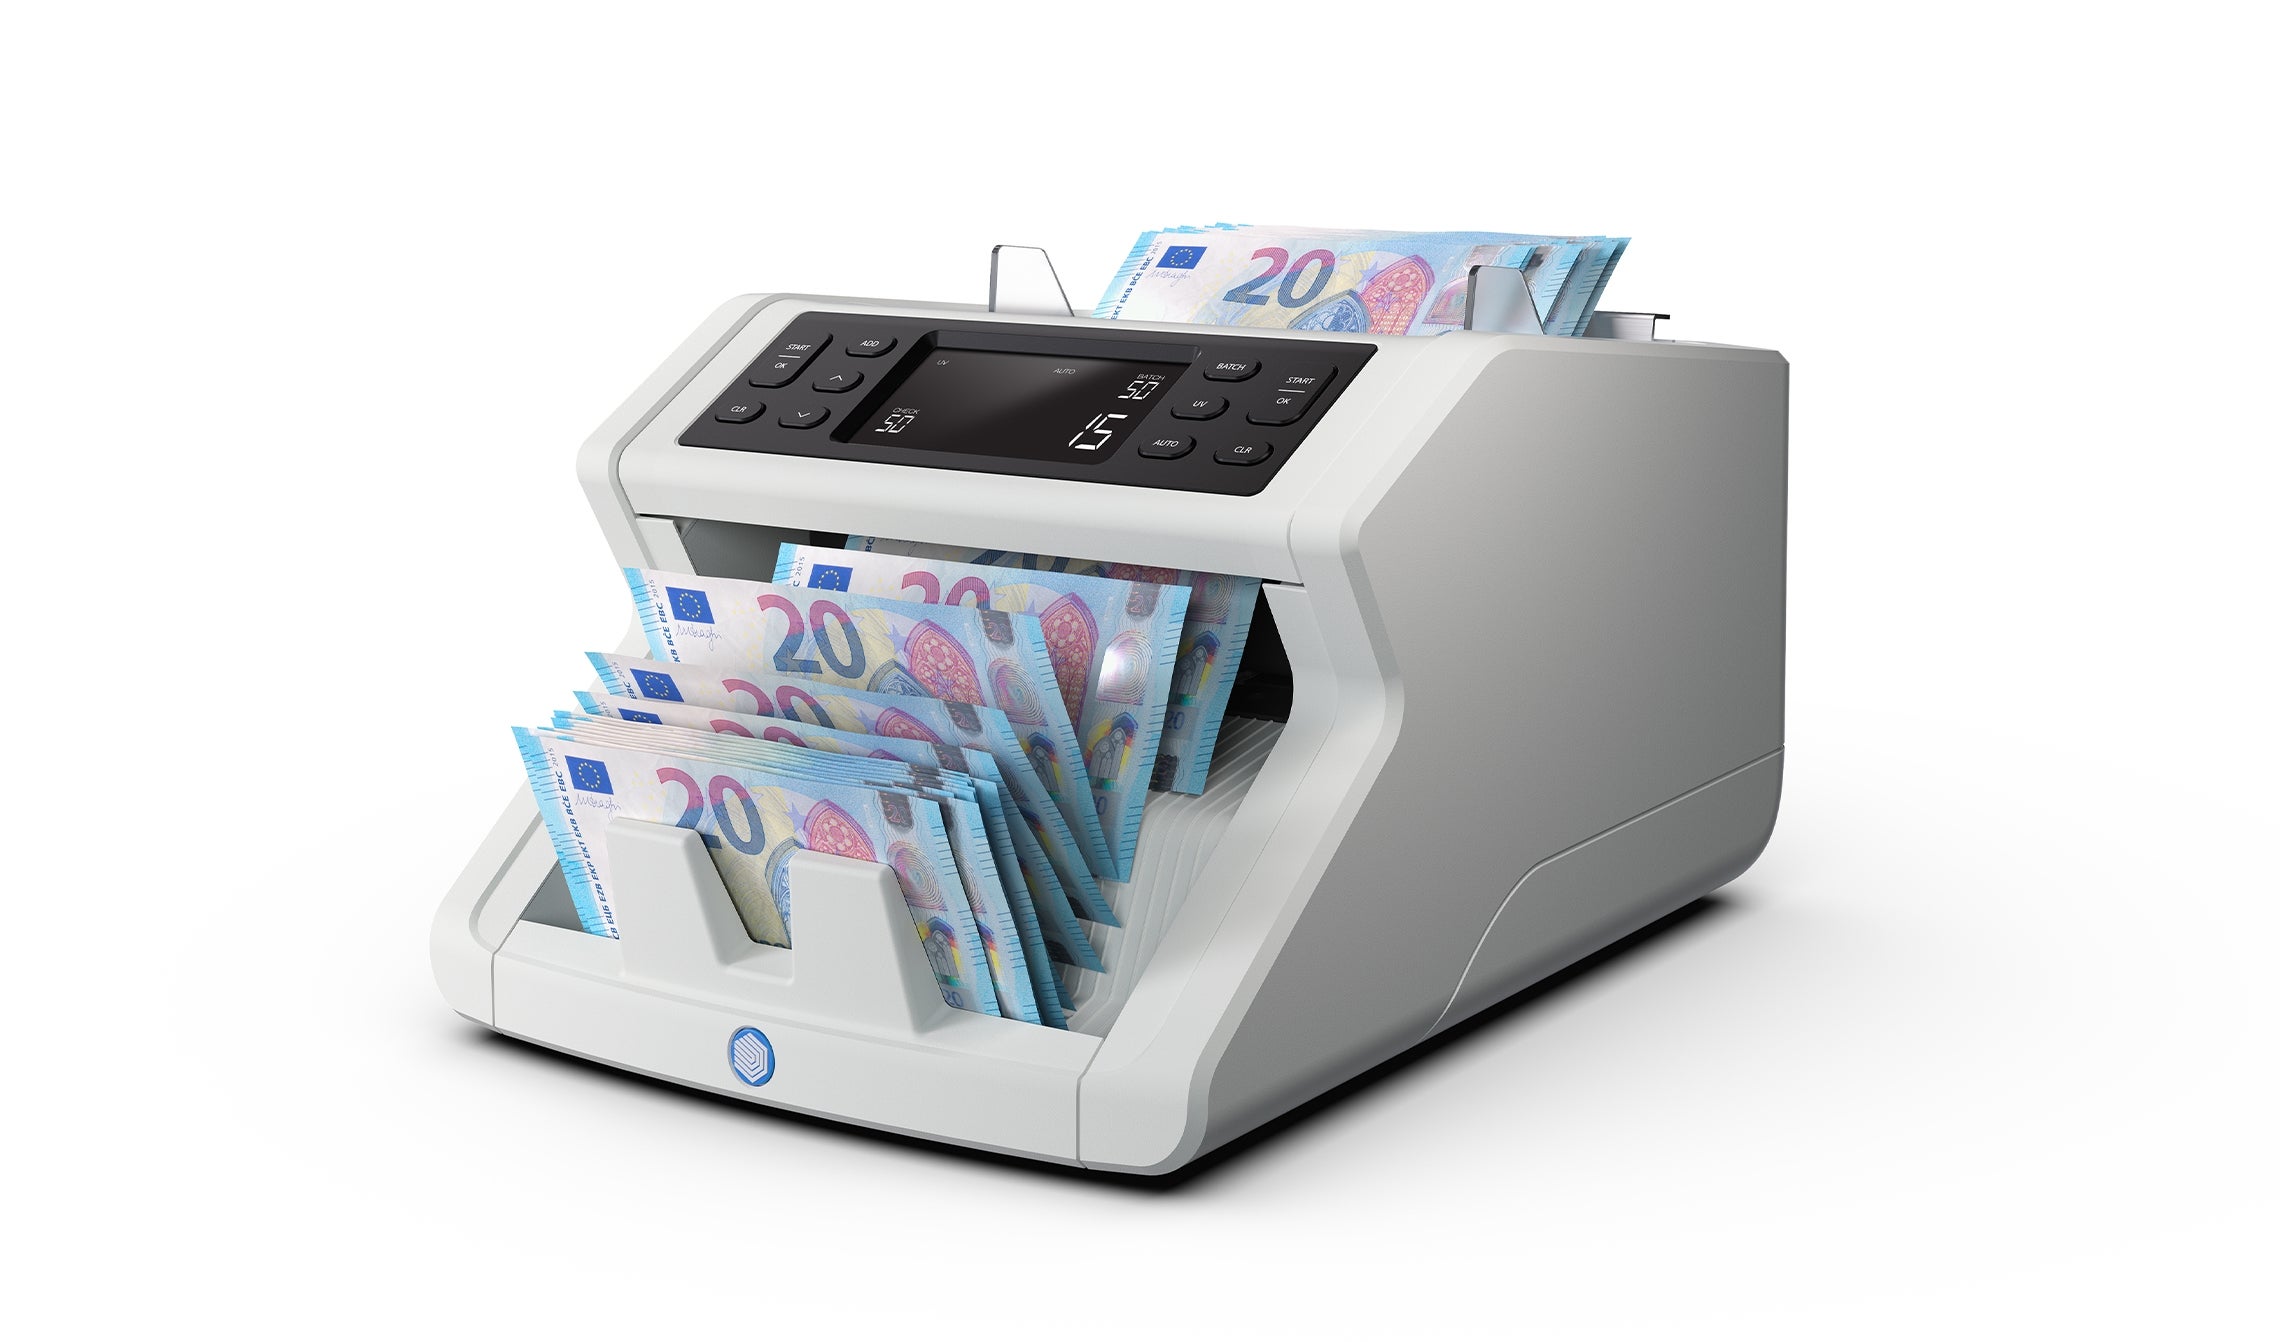 Conta Banconote automatico Safescan 2210 Professionale